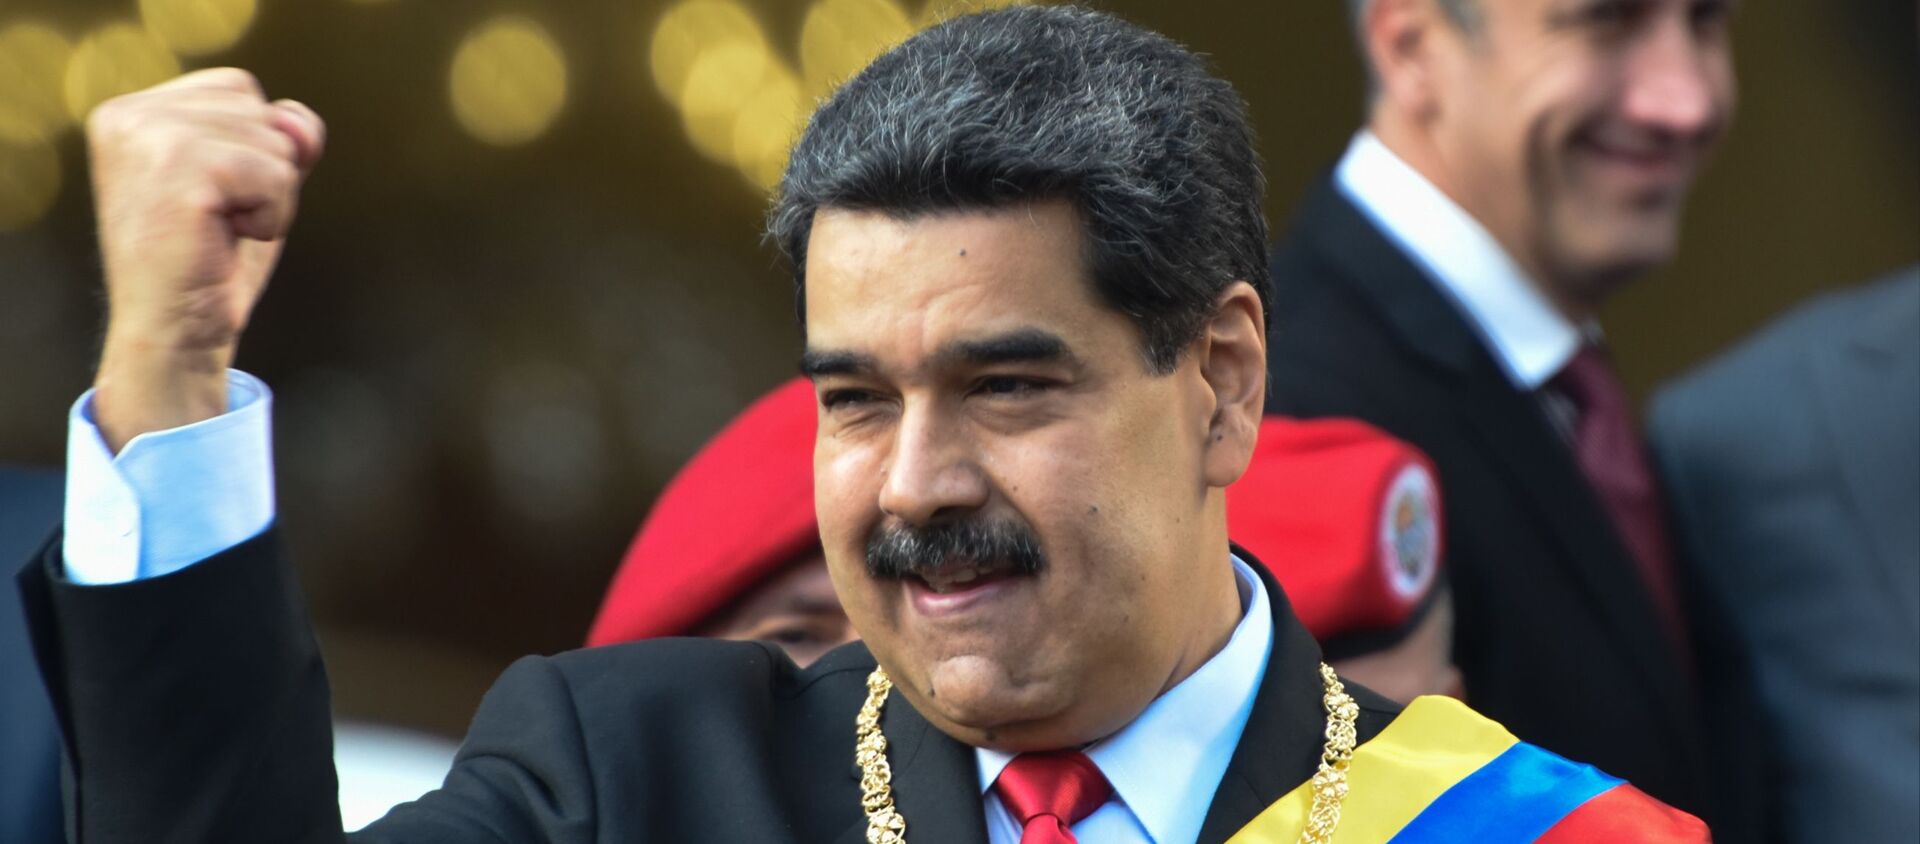 Nicolás Maduro, el presidente de Venezuela - Sputnik Mundo, 1920, 29.01.2021